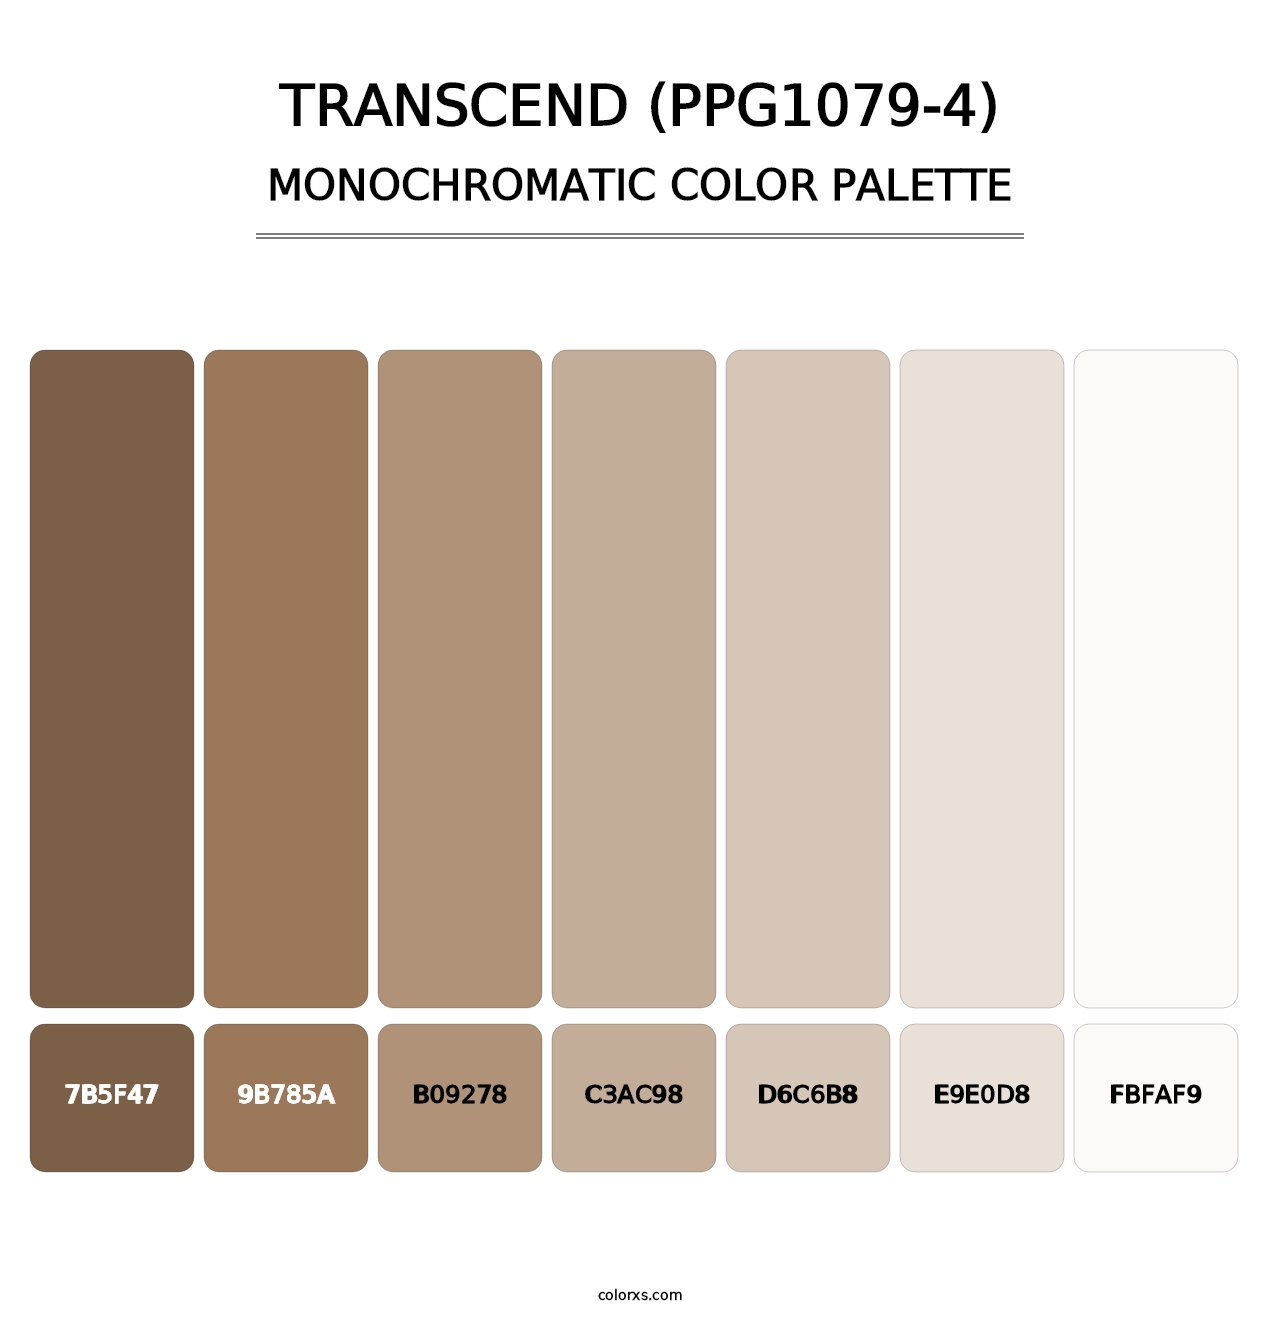 Transcend (PPG1079-4) - Monochromatic Color Palette